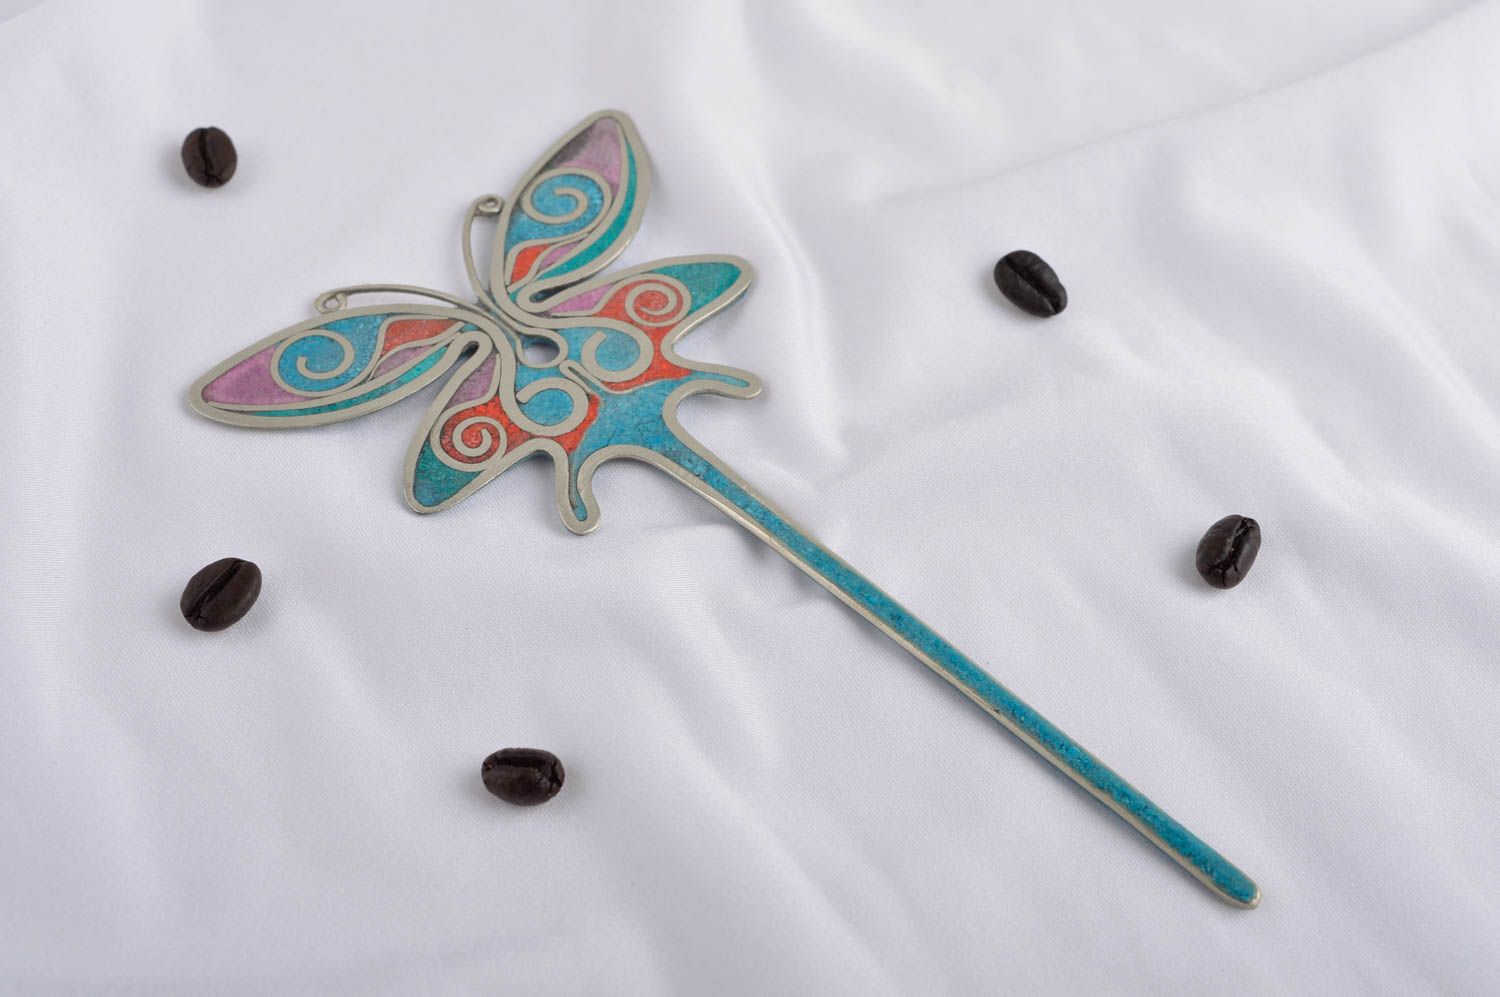 Handmade hairpin gemstone jewelry handmade hair accessories gifts for girls photo 1